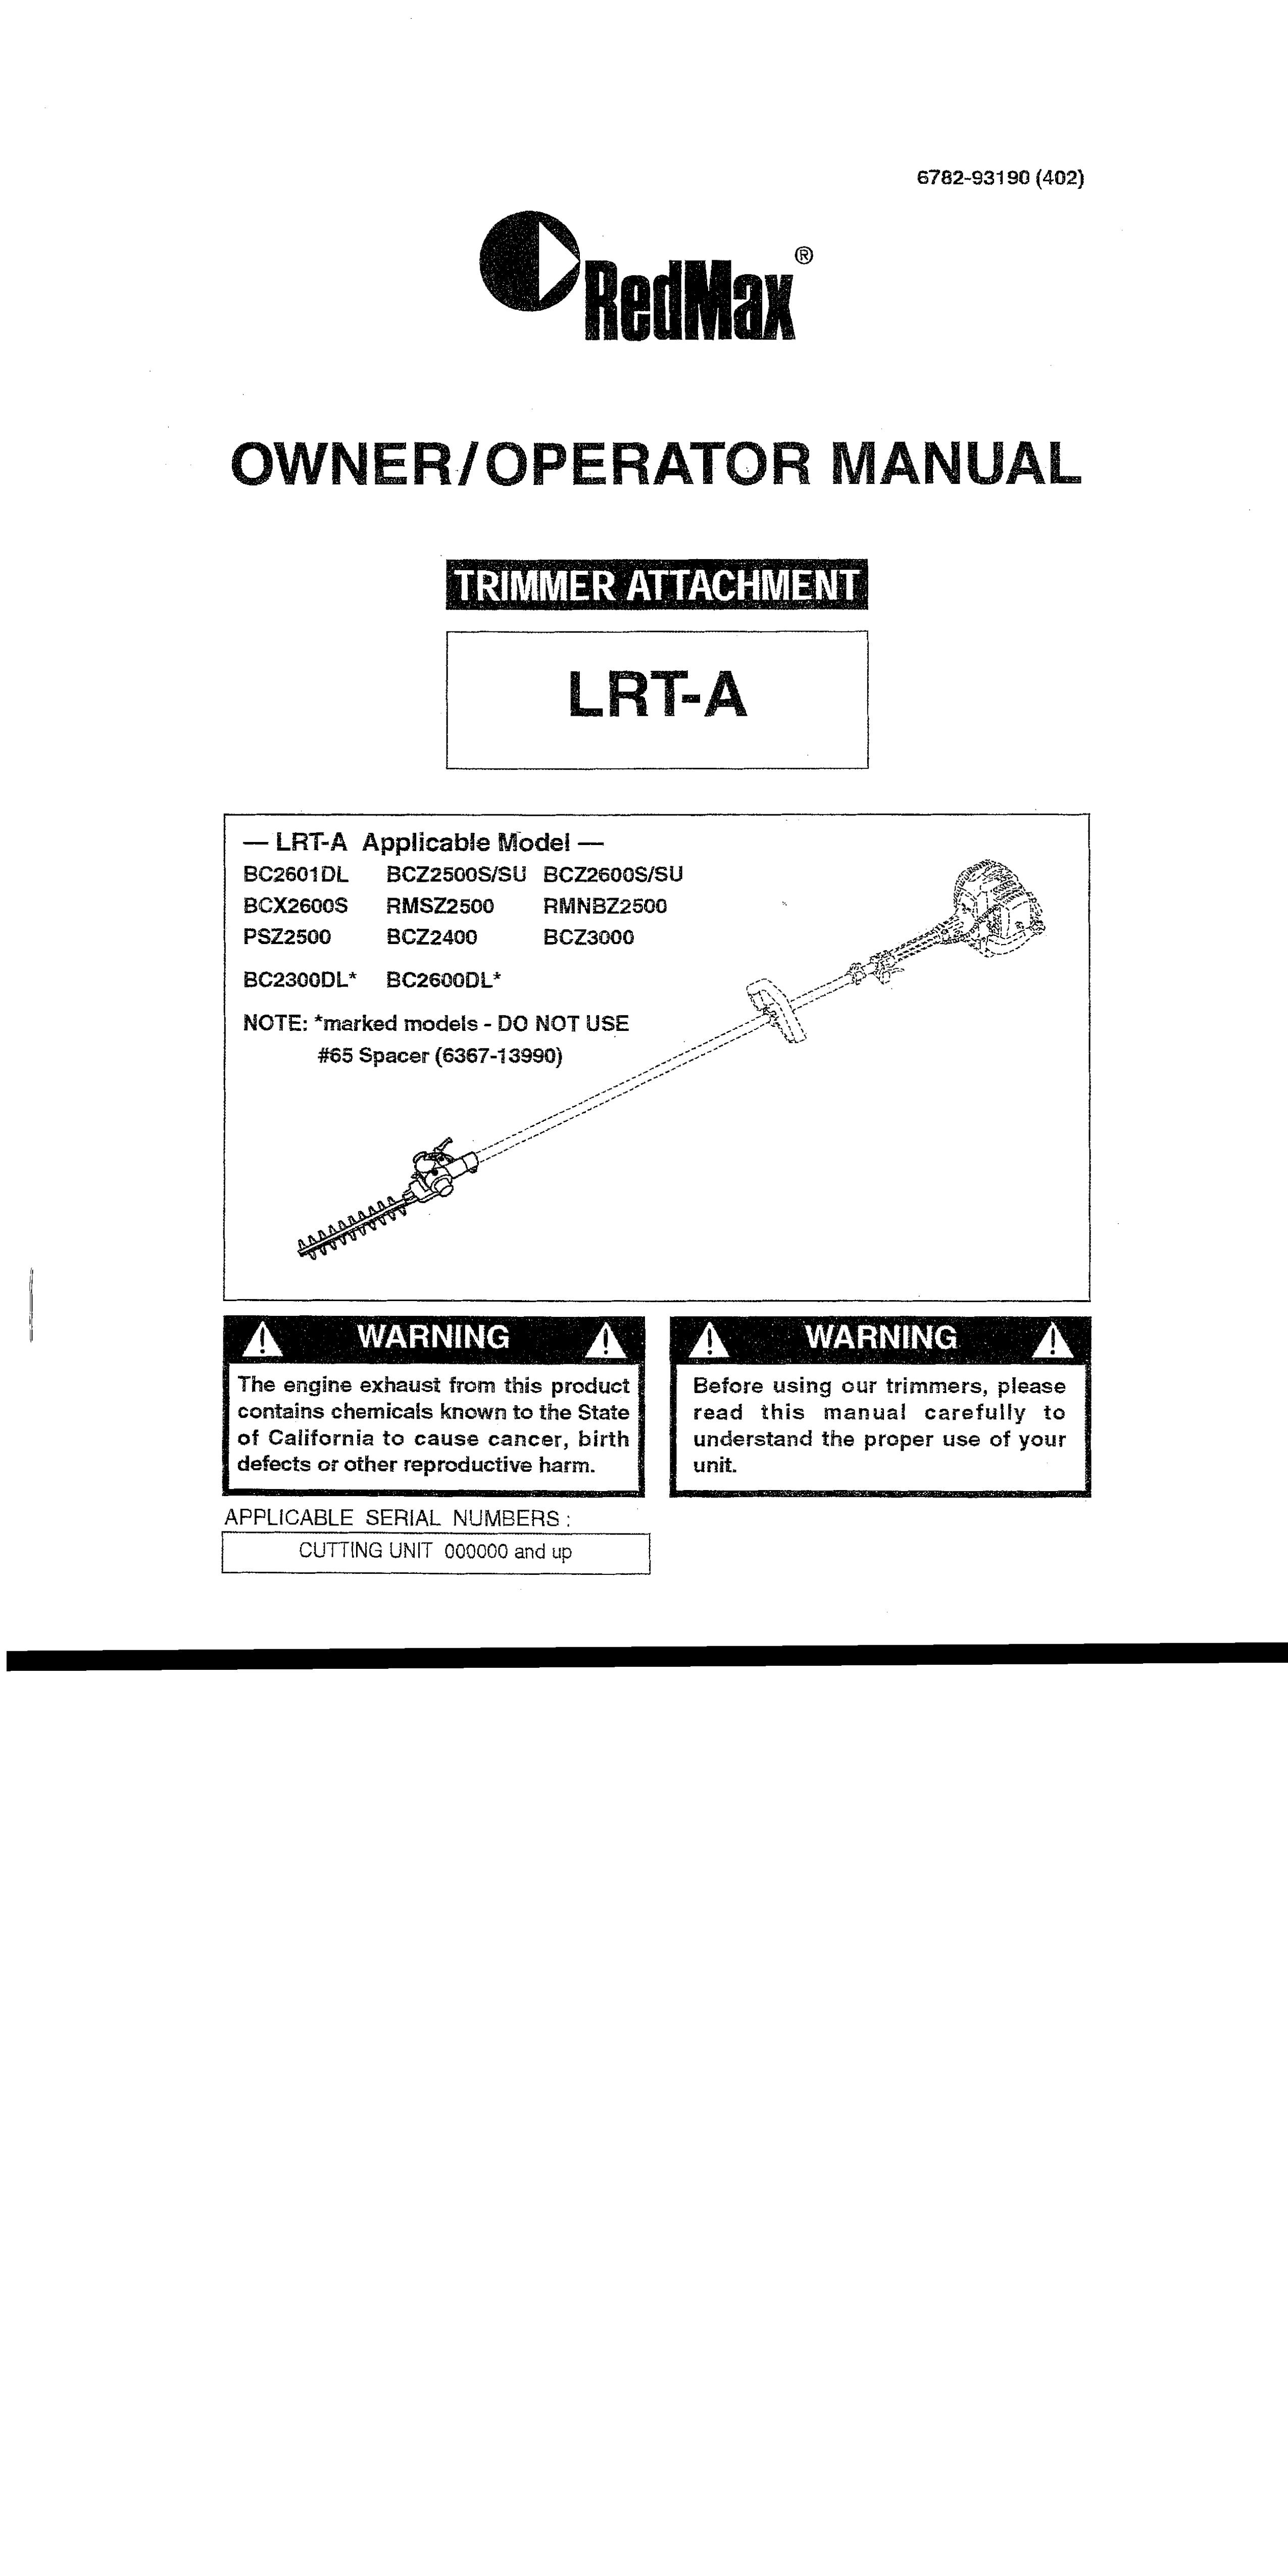 RedMax LRT-A Pole Saw User Manual